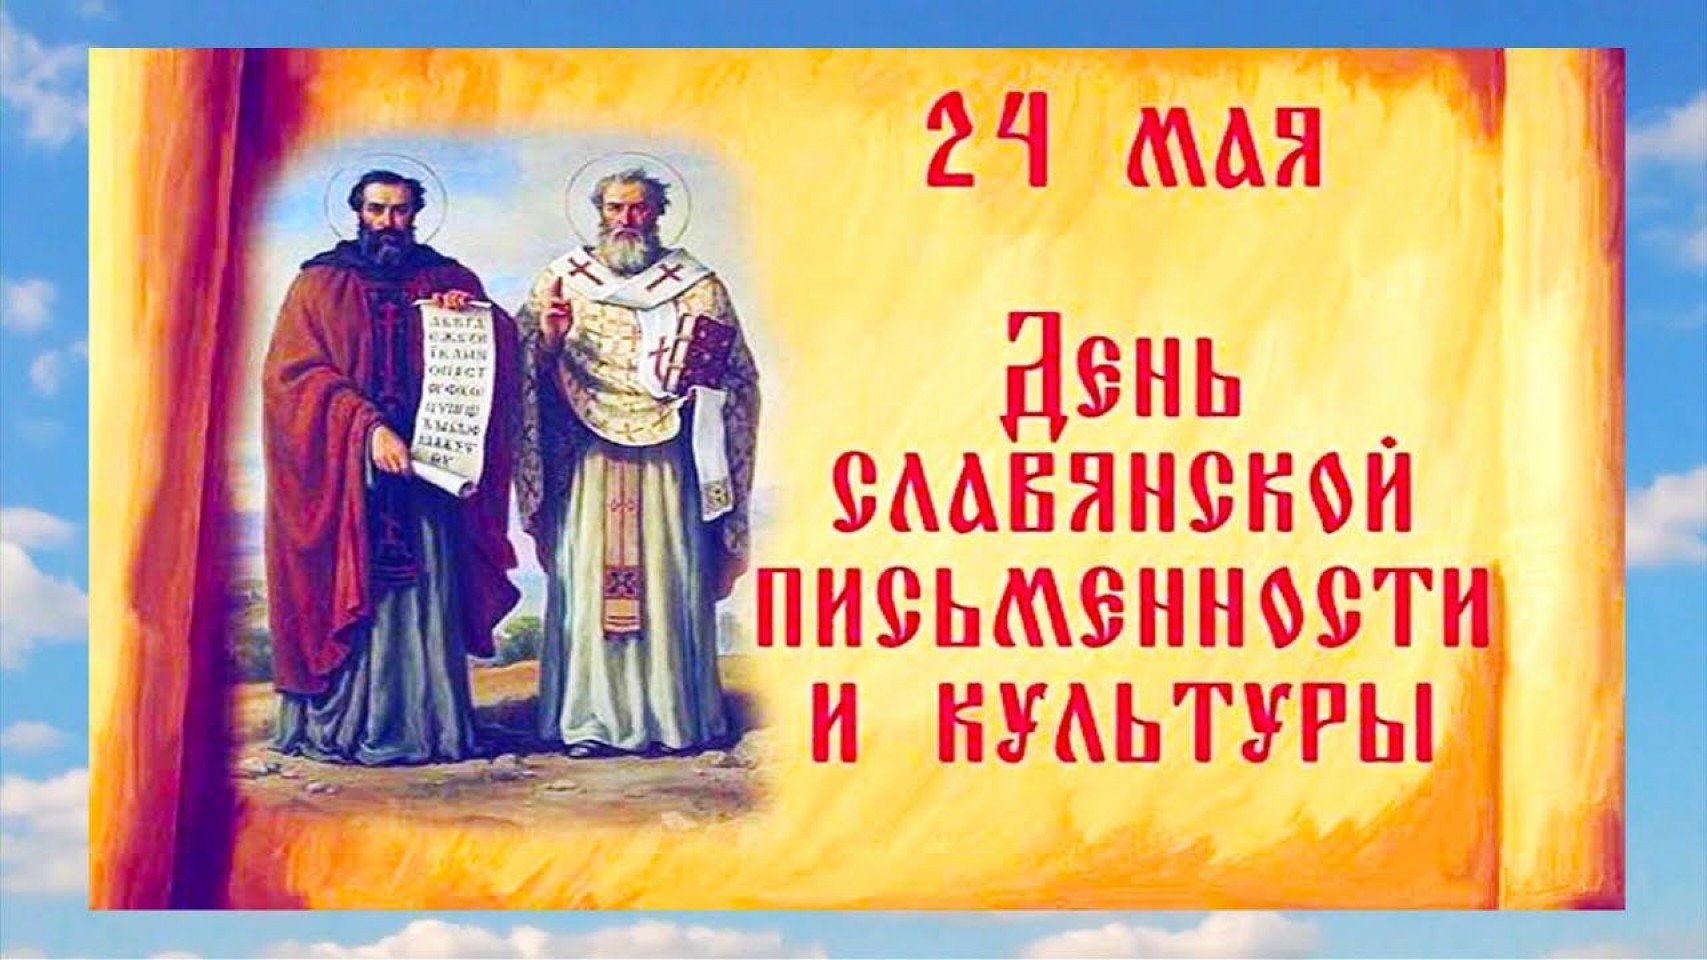 24 Мая день славянской письменности и культуры Кирилл и Мефодий